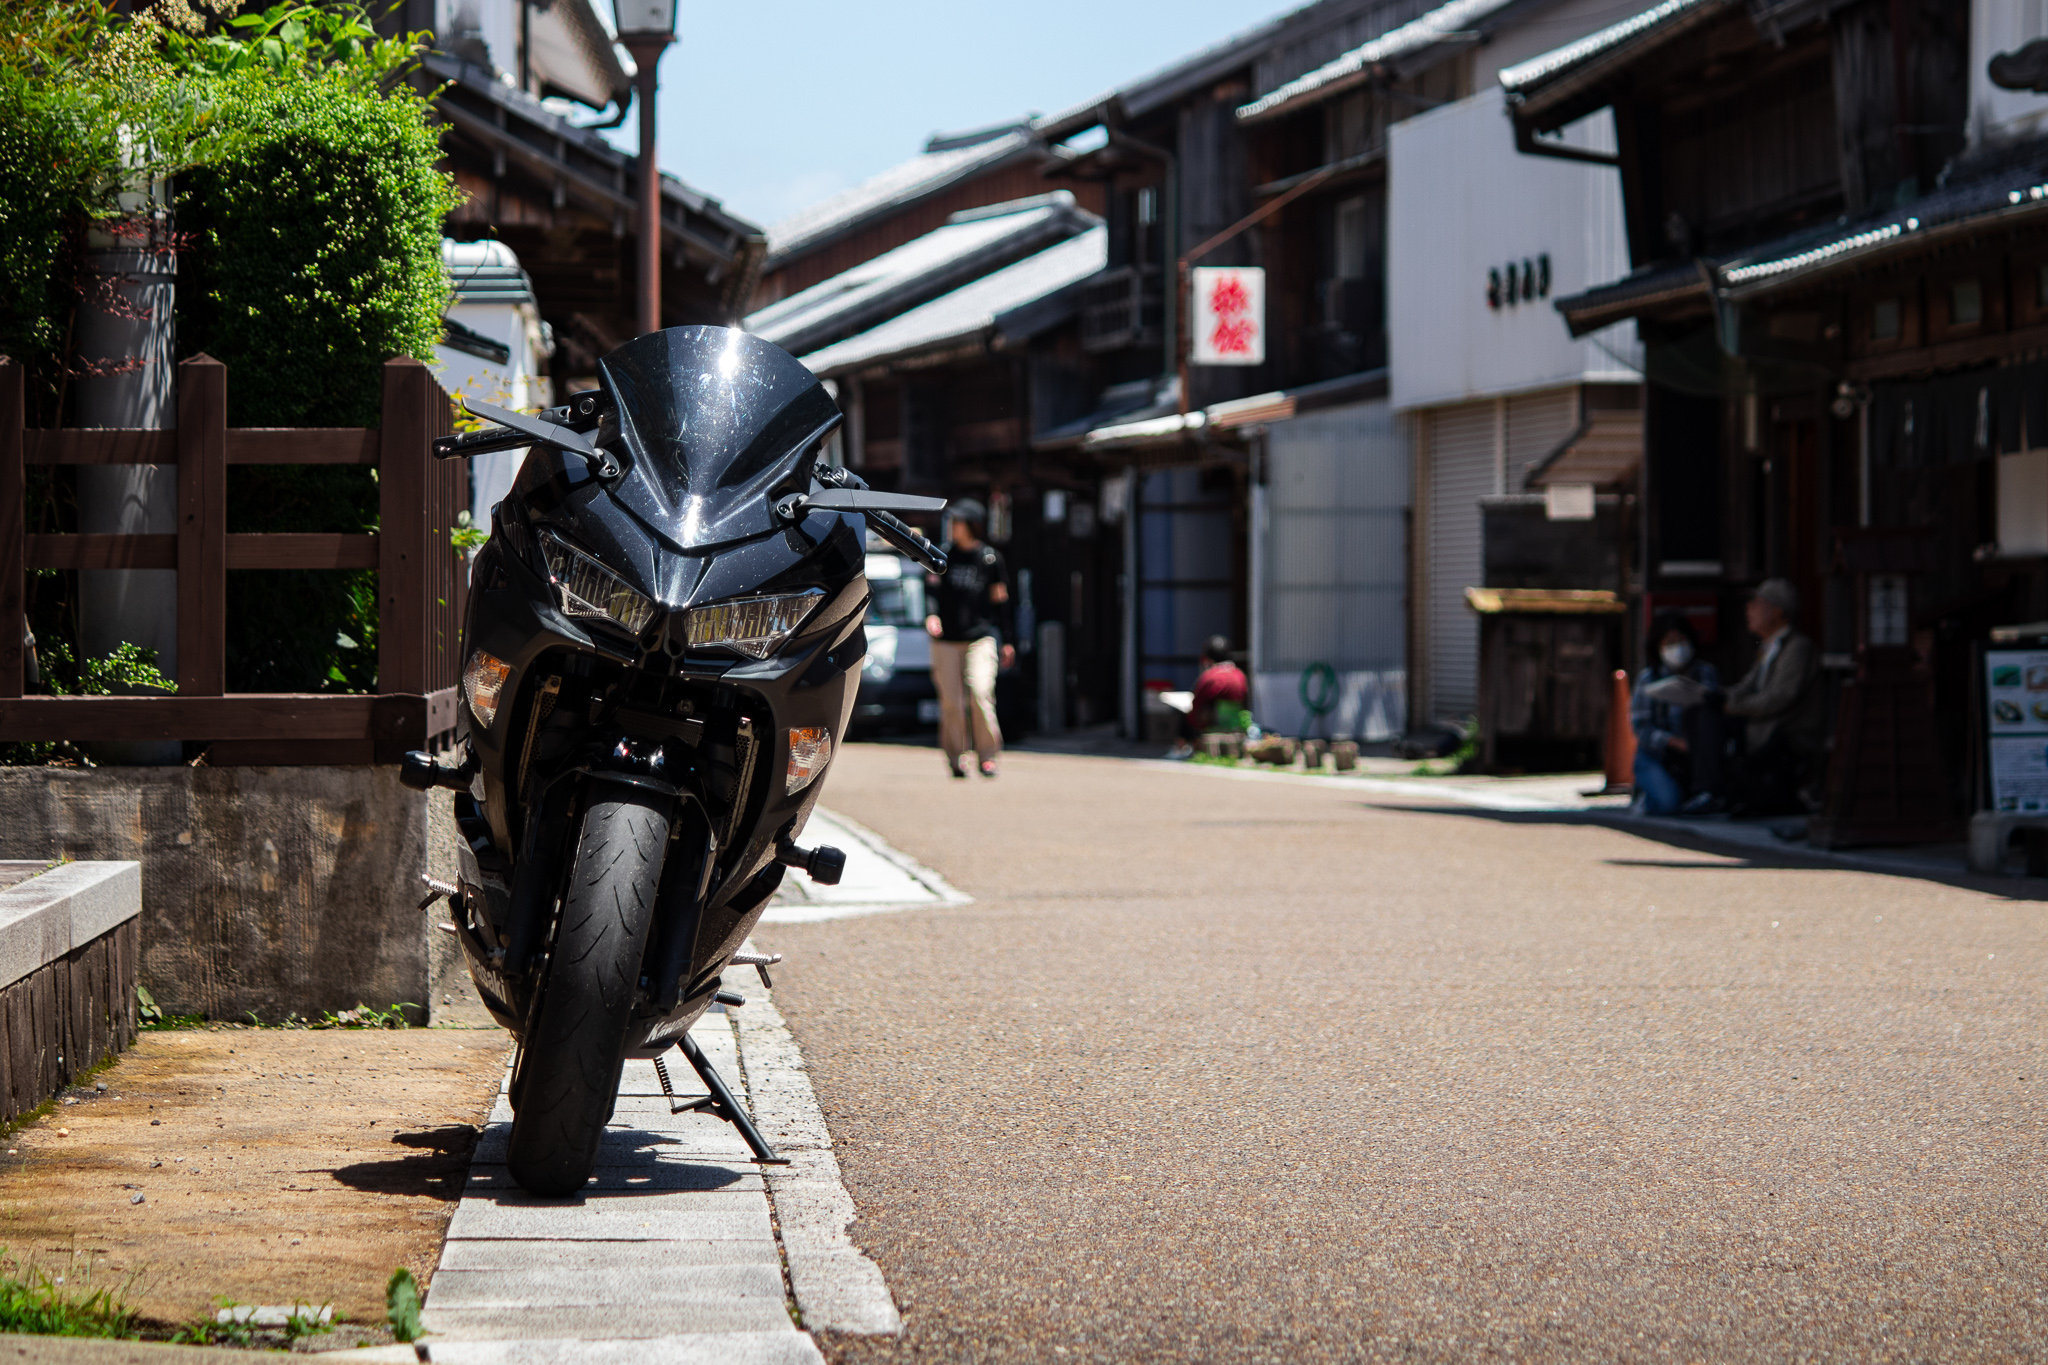 関宿で撮影したバイク(Ninja400)の写真